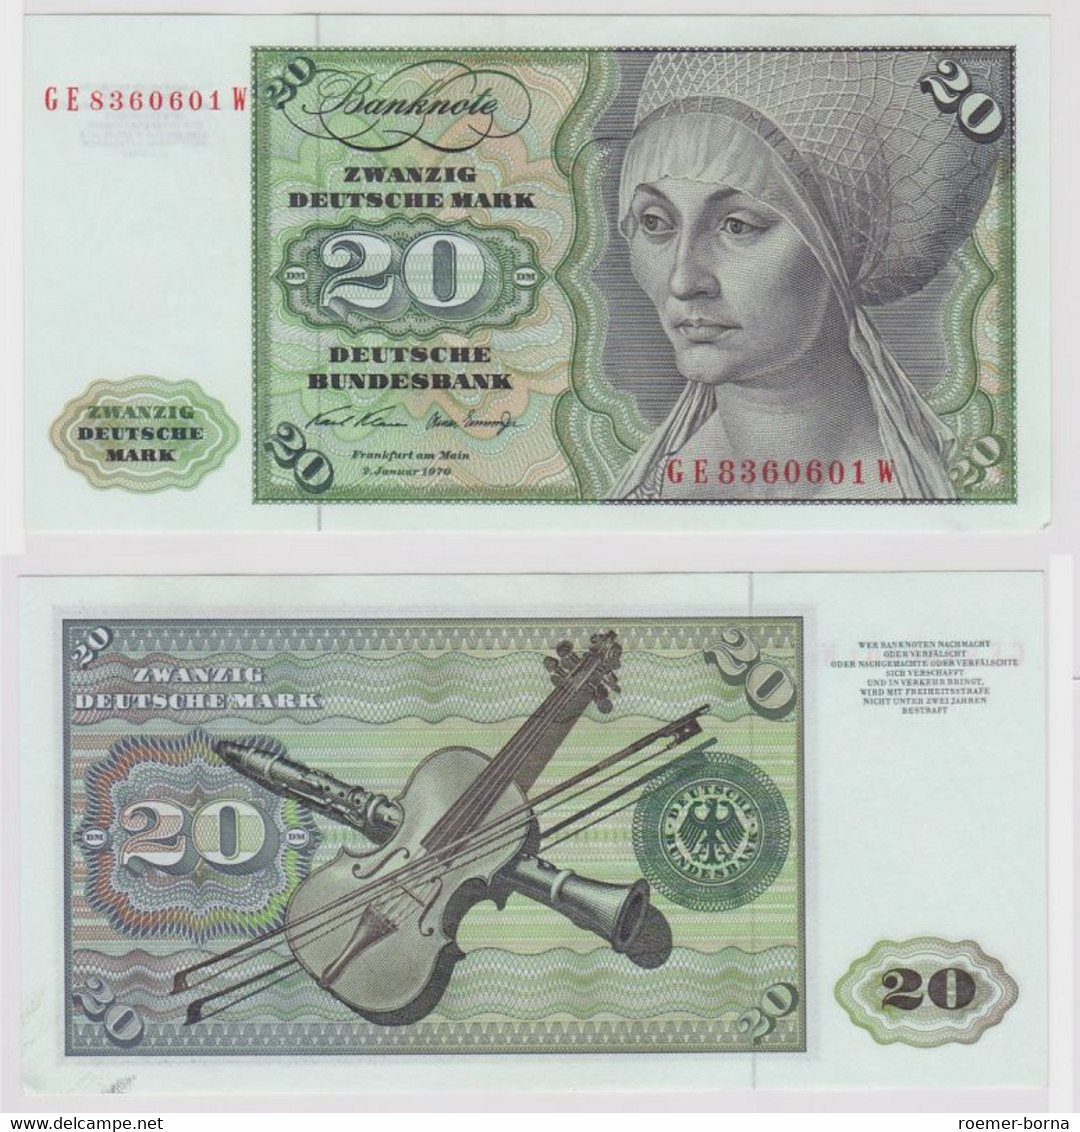 T148158 Banknote 20 DM Deutsche Mark Ro. 271b Schein 2.Jan. 1970 KN GE 8360601 W - 20 Deutsche Mark